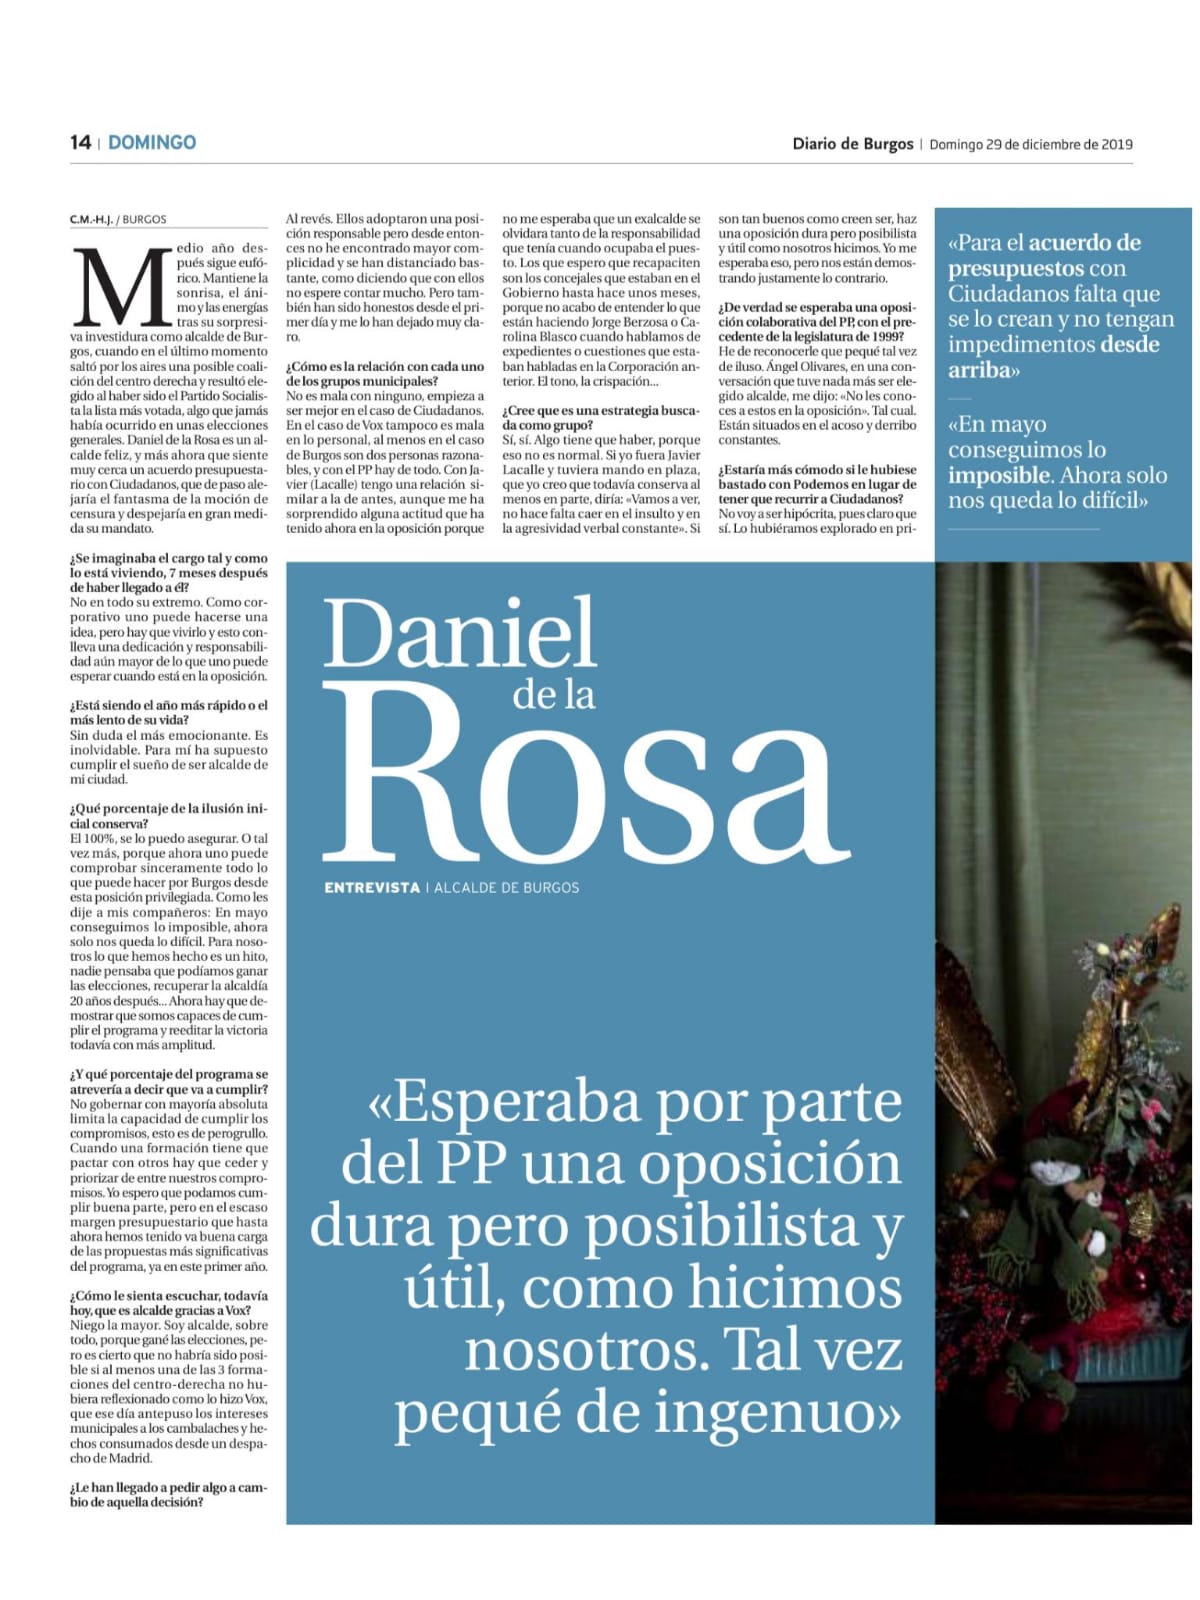 Entrevista a Daniel de la Rosa, alcalde de Burgos, en Diario de Burgos